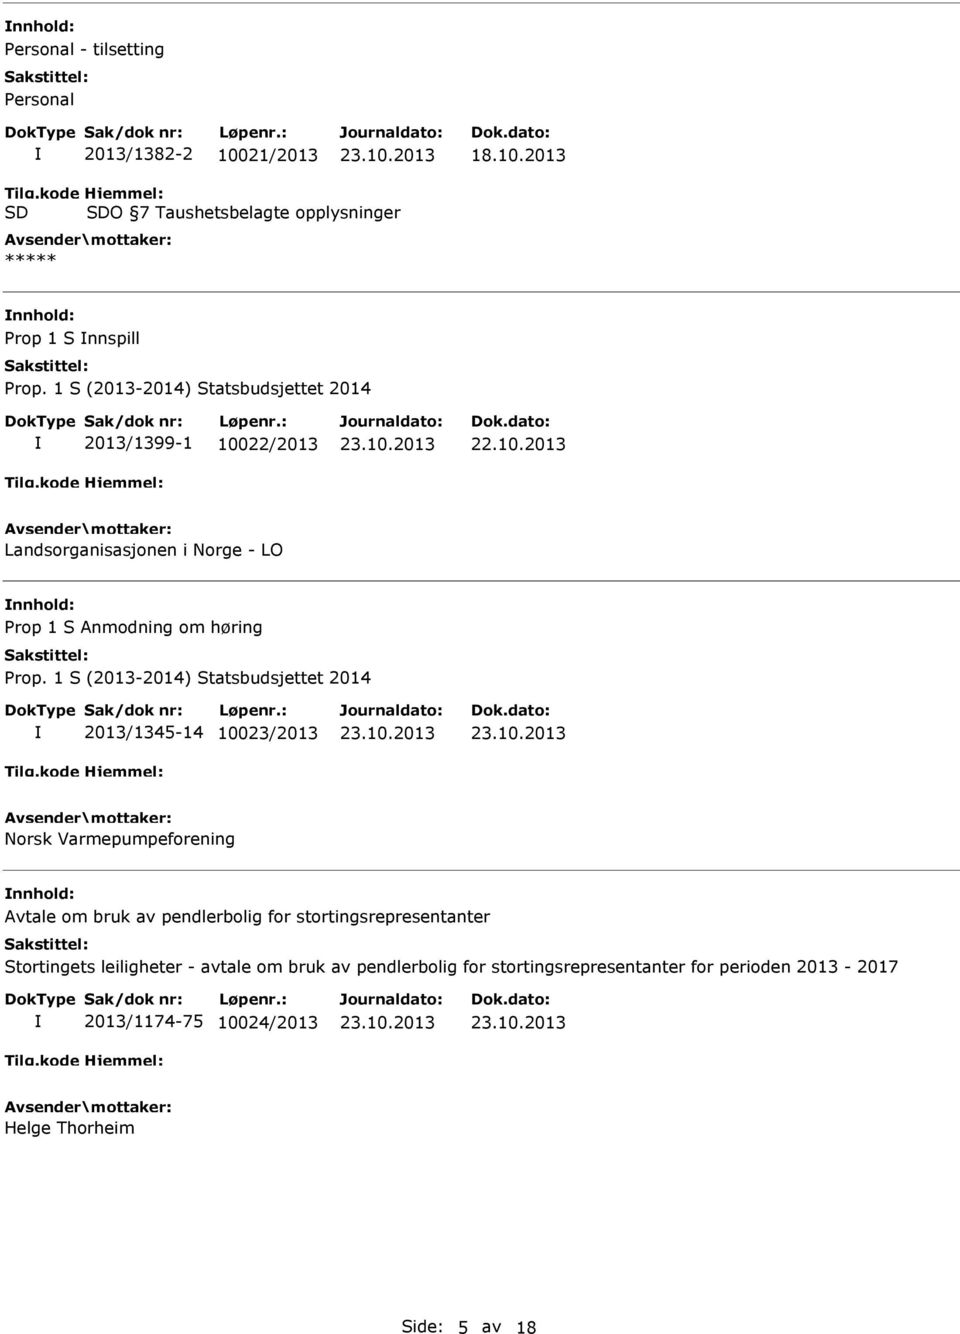 2013 O 7 Taushetsbelagte opplysninger ***** nnhold: Prop 1 S nnspill 2013/1399-1 10022/2013 Landsorganisasjonen i Norge